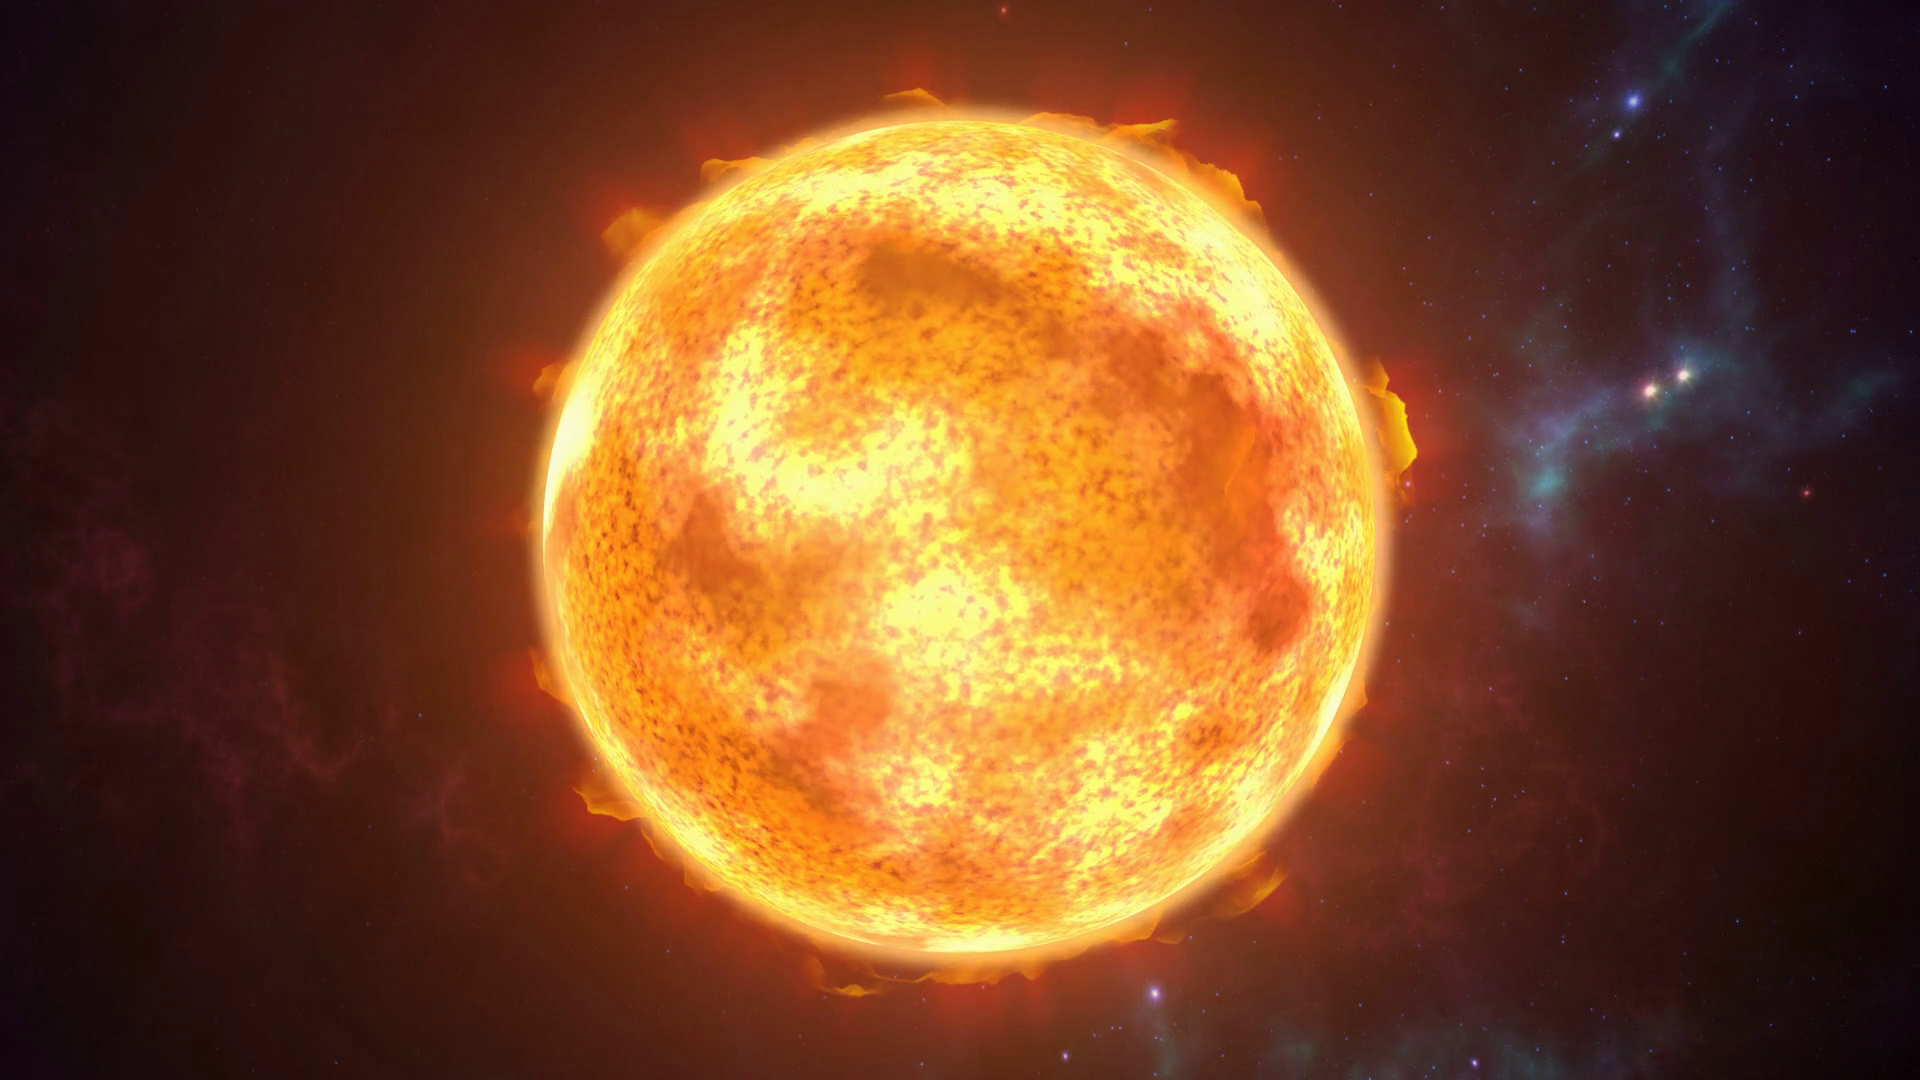 Animated sun the burning planet in cosmic scene. 3D rendering 4K ...